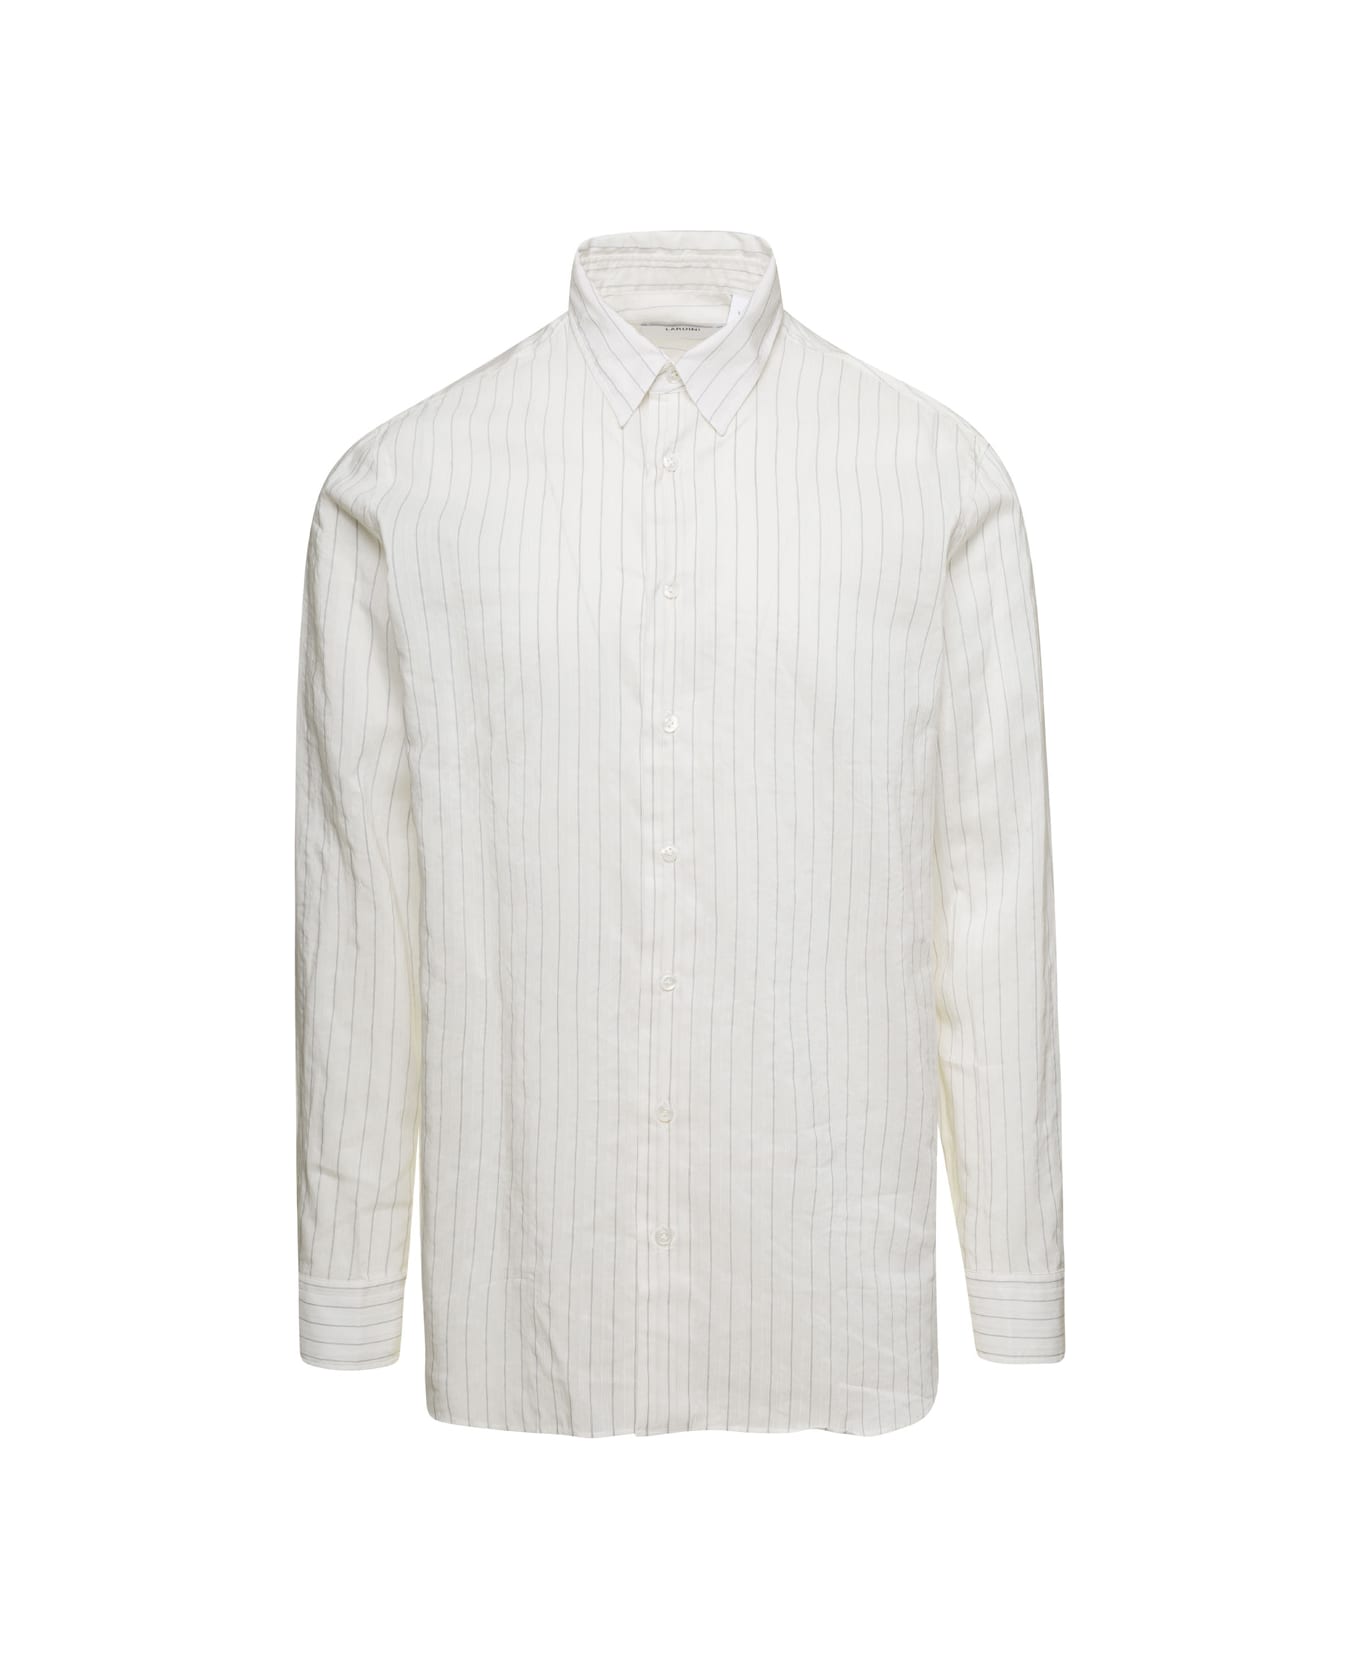 Lardini White Classic Shirt In Cotton Blend Man - White シャツ